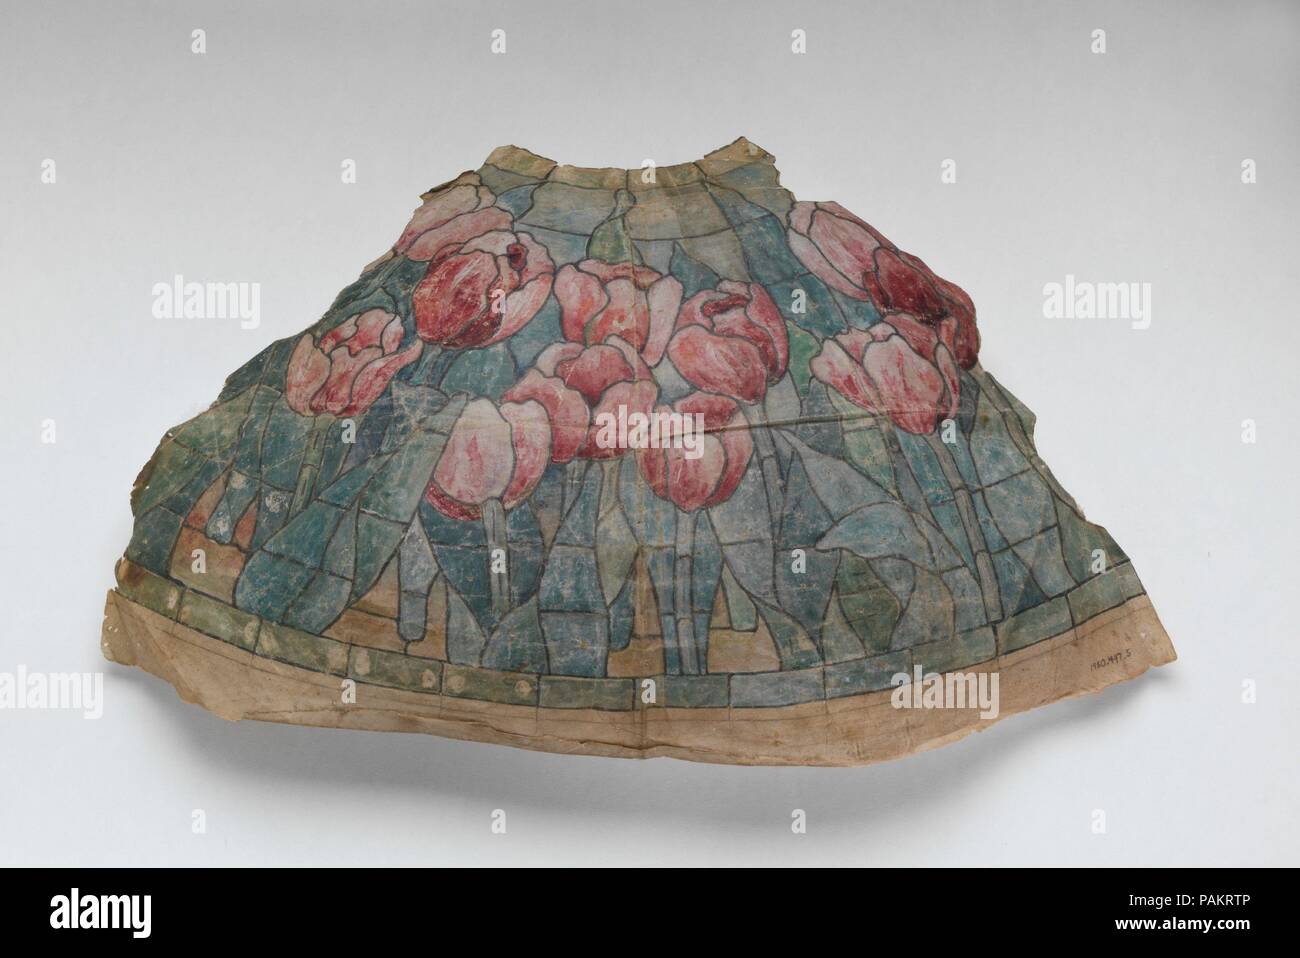 Muster Muster für einen Lampenschirm. Kultur: American. Abmessungen: 1980.497.5 a: 9 1/2 x 16 1/16-in. (24,1 x 40,8 cm) 1980.497.5 b: 9 9/16 x 5 1/2 in. (24,3 x 14 cm). Teekocher: Tiffany Studios (1902-32). Datum: 1900-1907. Florale Motive dominieren einige der eindrucksvollsten Natur inspirierte Lampenschirme von Tiffany Studios produziert. Das Tulip war ein beliebtes Thema und wie dieses Beispiel Muster zeigt, die Farben reichen von reichen Rosa und Dunkelrot für eine Reihe von Blau- und Grüntönen für das Laub. Dieses aquarell Rendering auf Leinen ist der erste Schritt bei der Herstellung eines Tiffany Studios Lampenschirm. Nach der Genehmigung Stockfoto